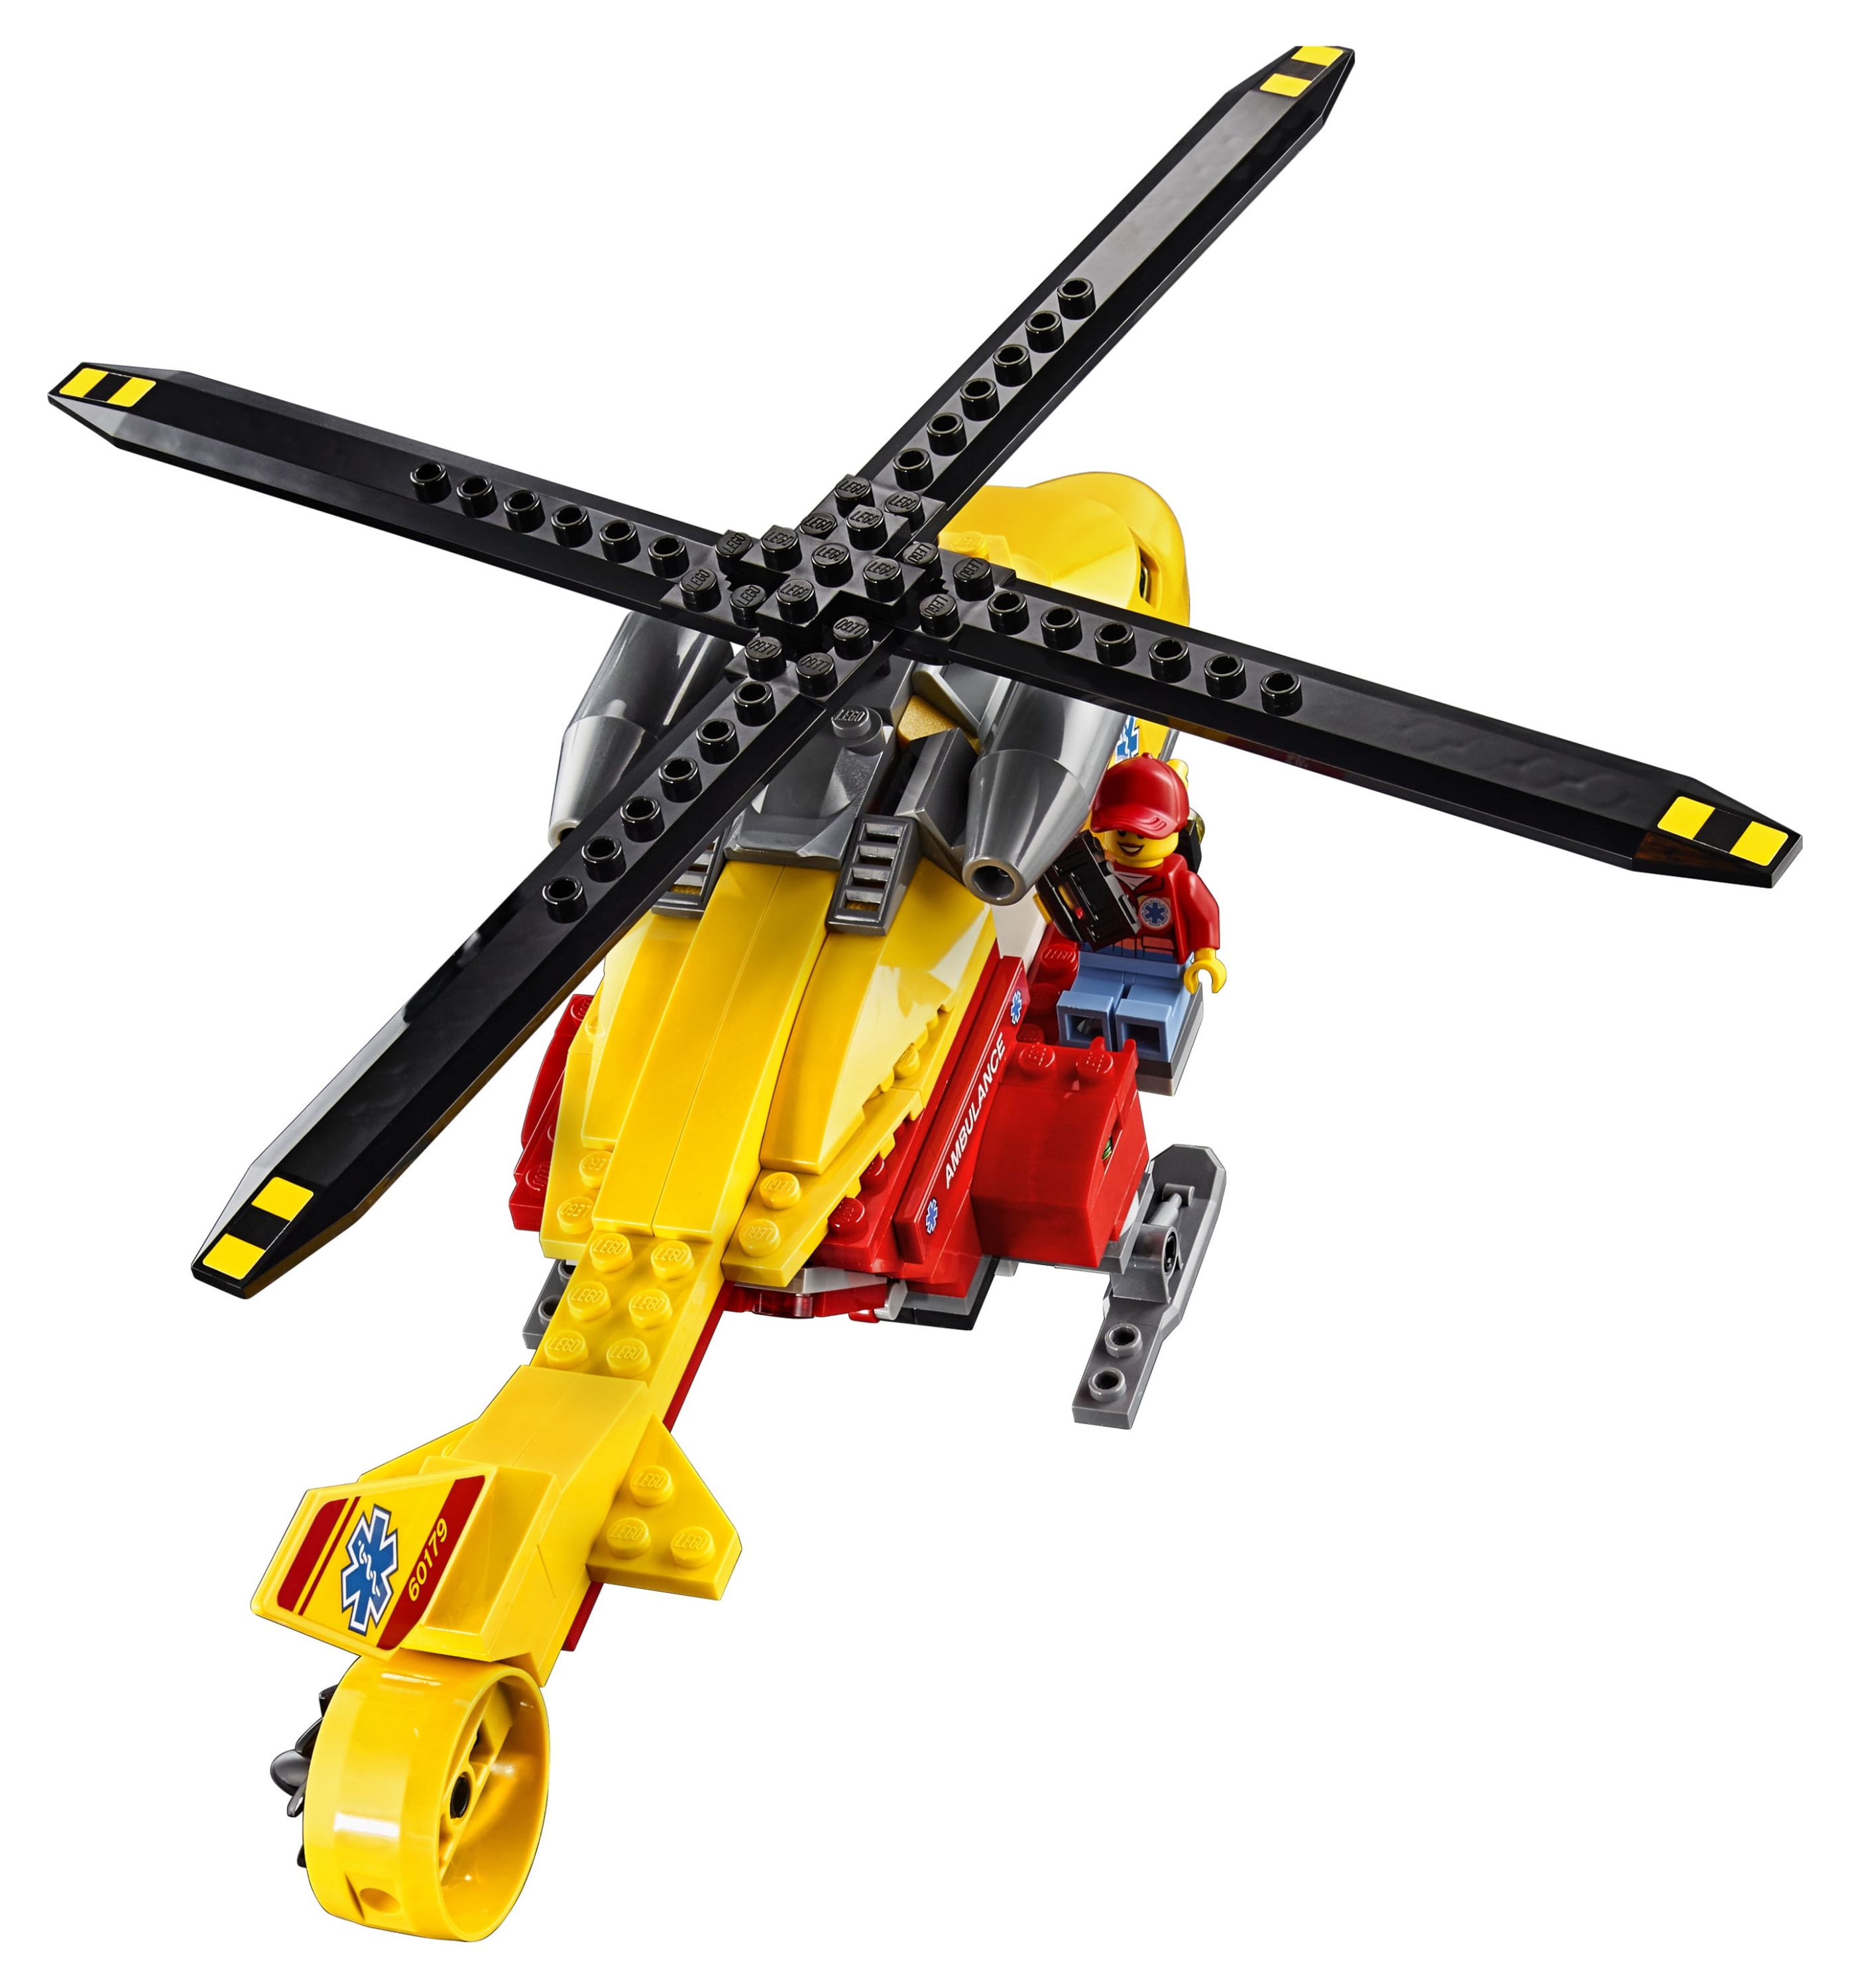 LEGO City Great Vehicles Ambulance Helicopter 60179 - image 2 of 5